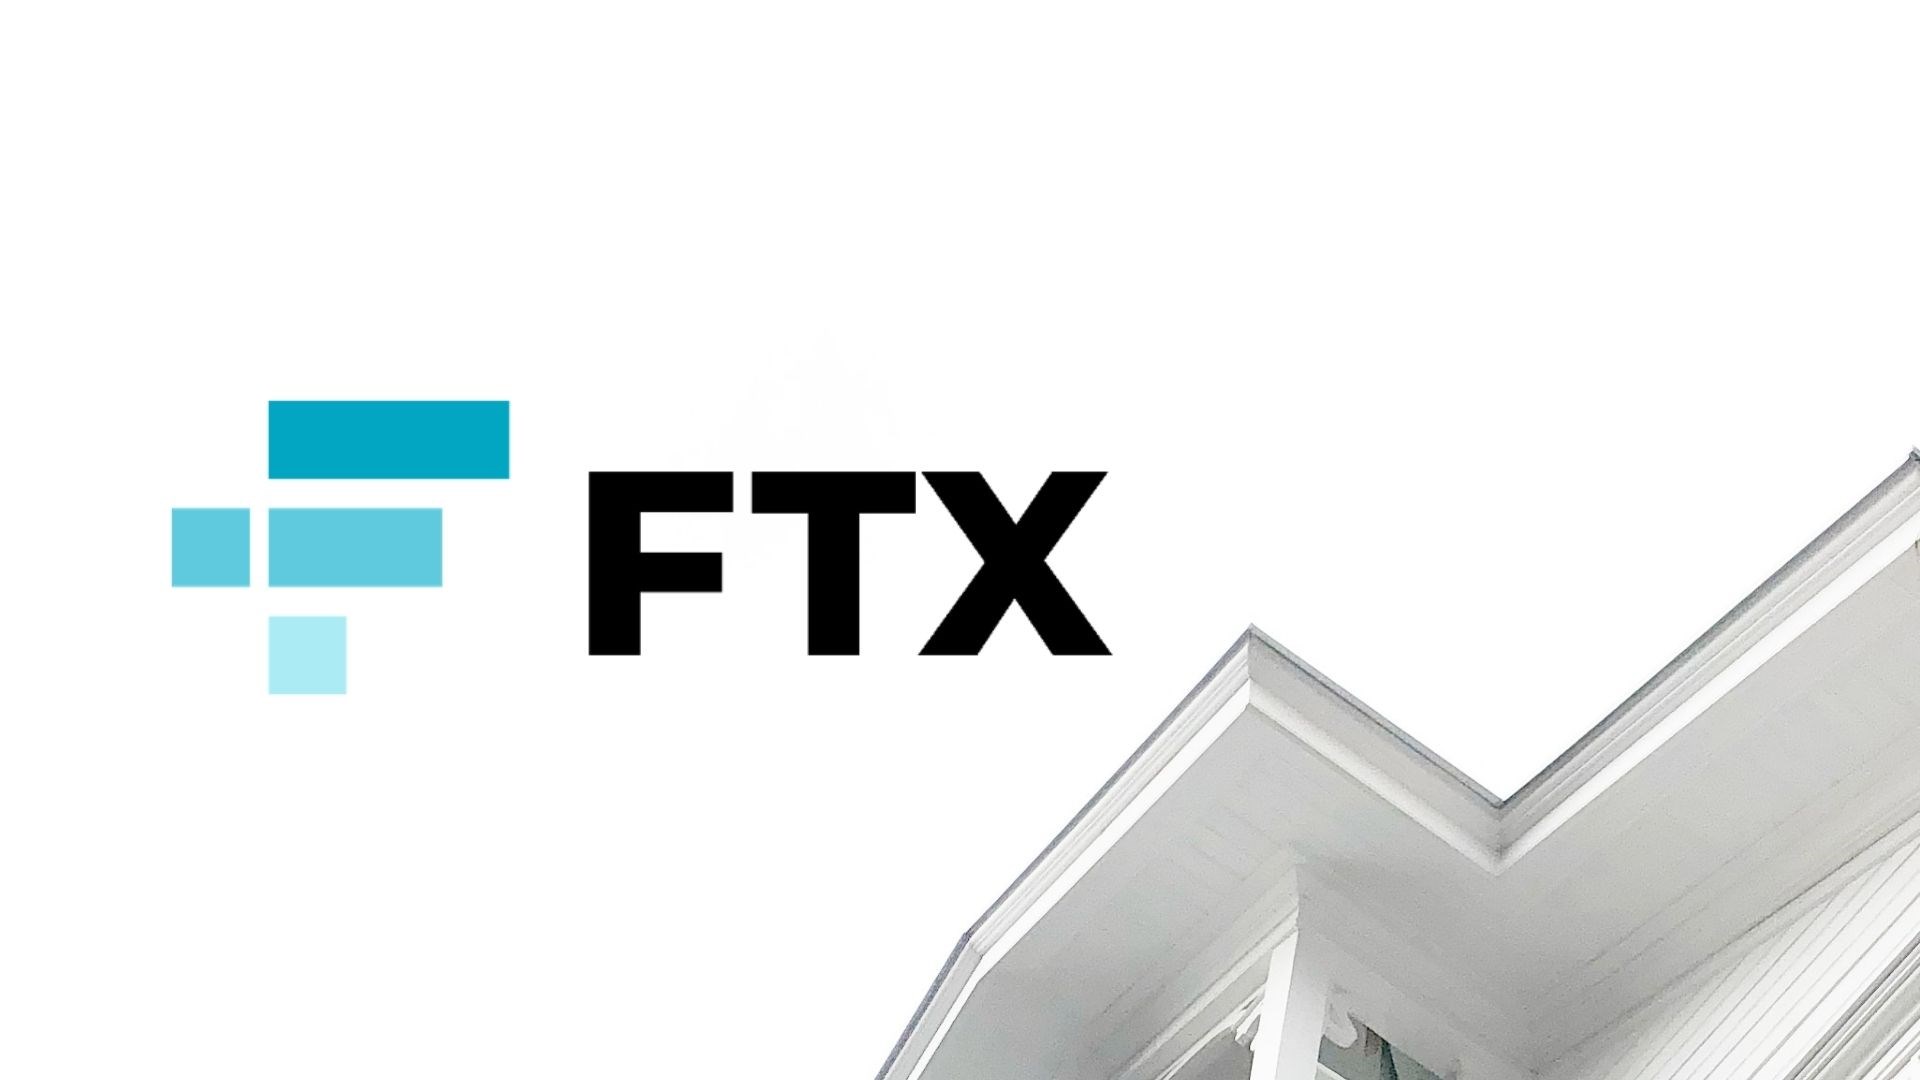 Avustralya, FTX’in lisansını askıya aldı